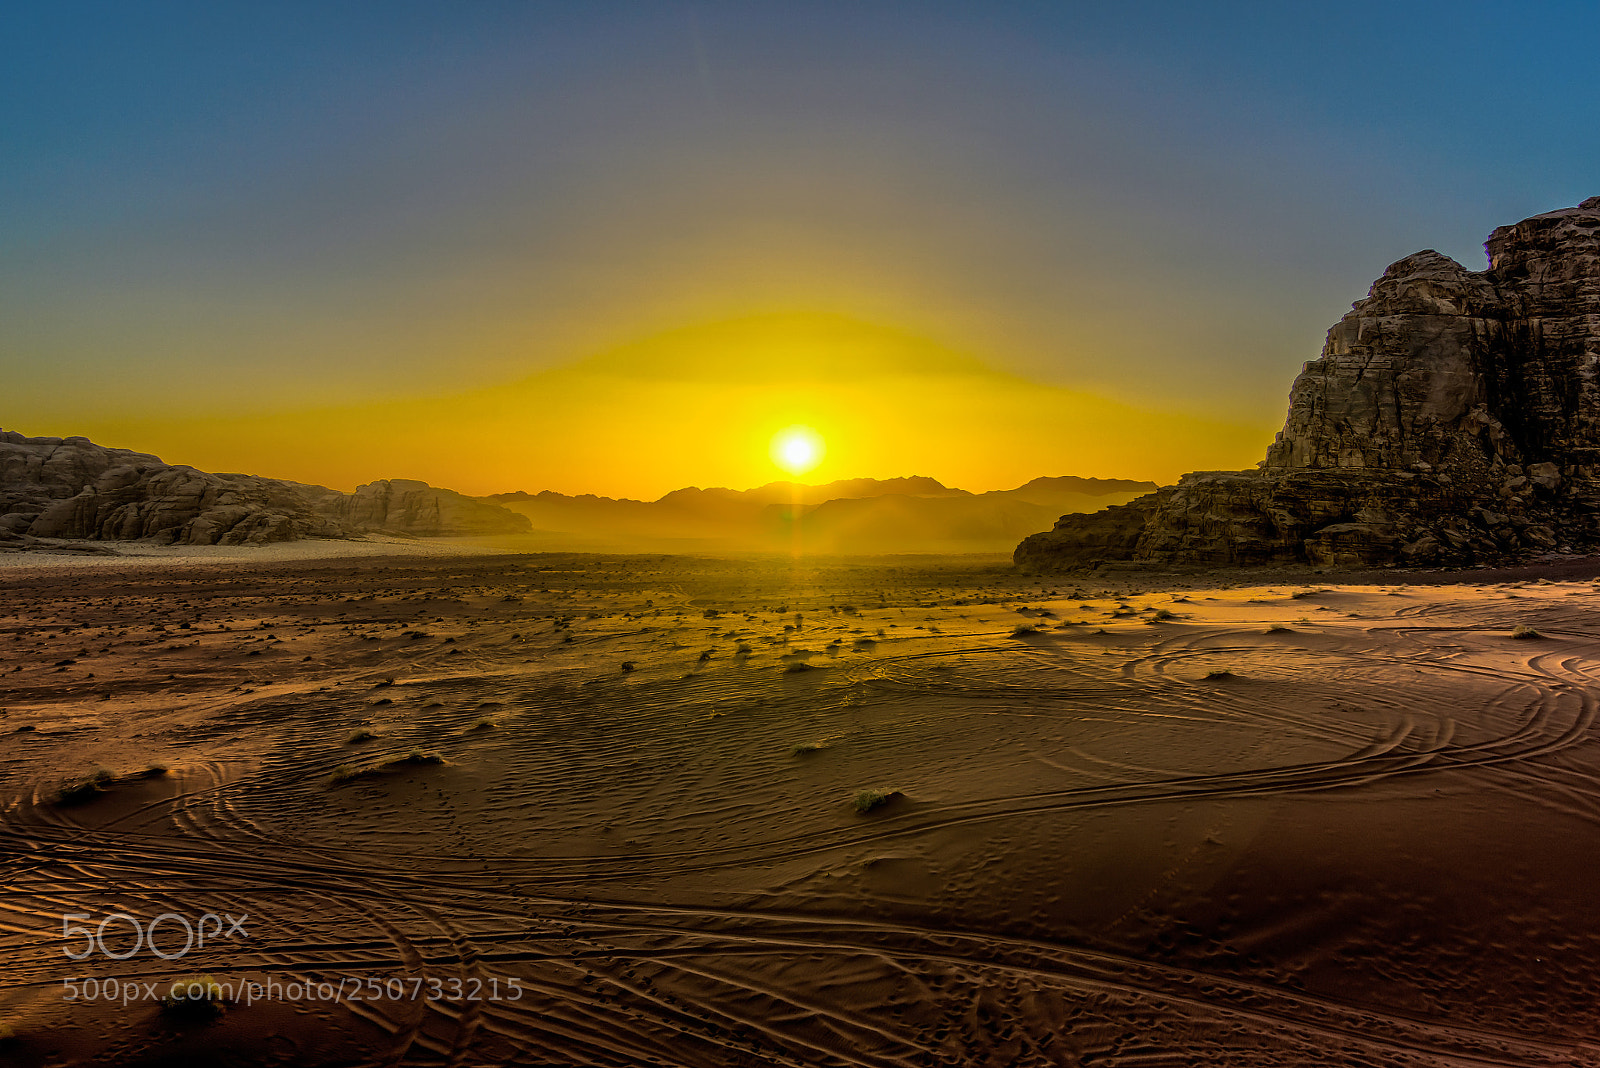 Sony ILCA-77M2 sample photo. Wadi rum sunset photography